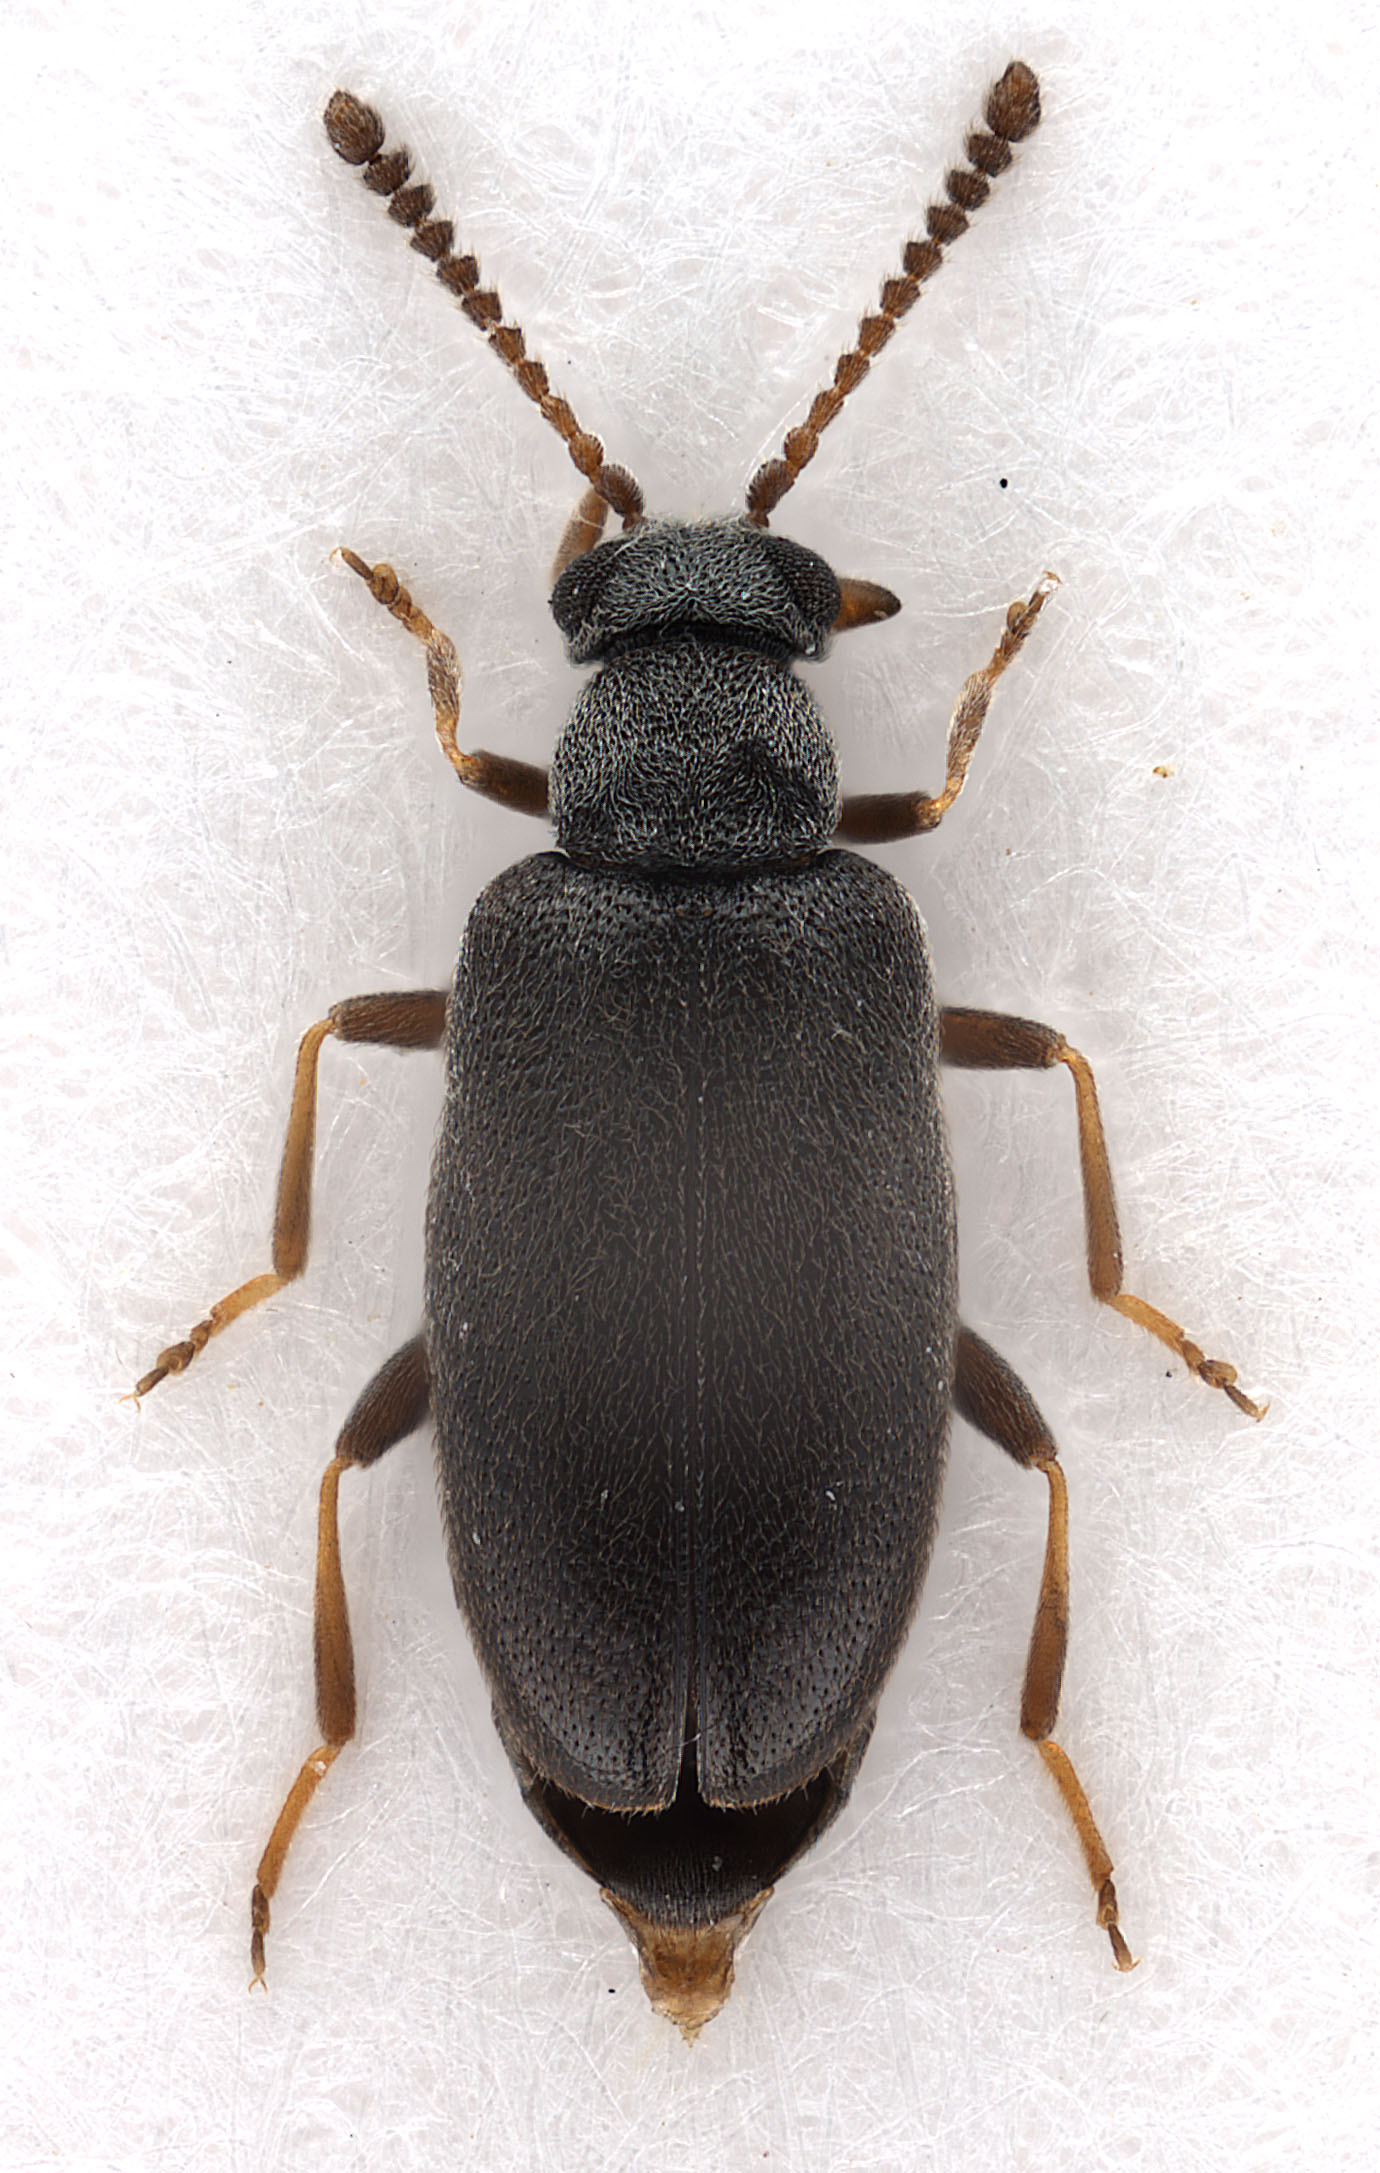 Pseudoanidorus laesicollis (Fairmaire, 1884) (female)